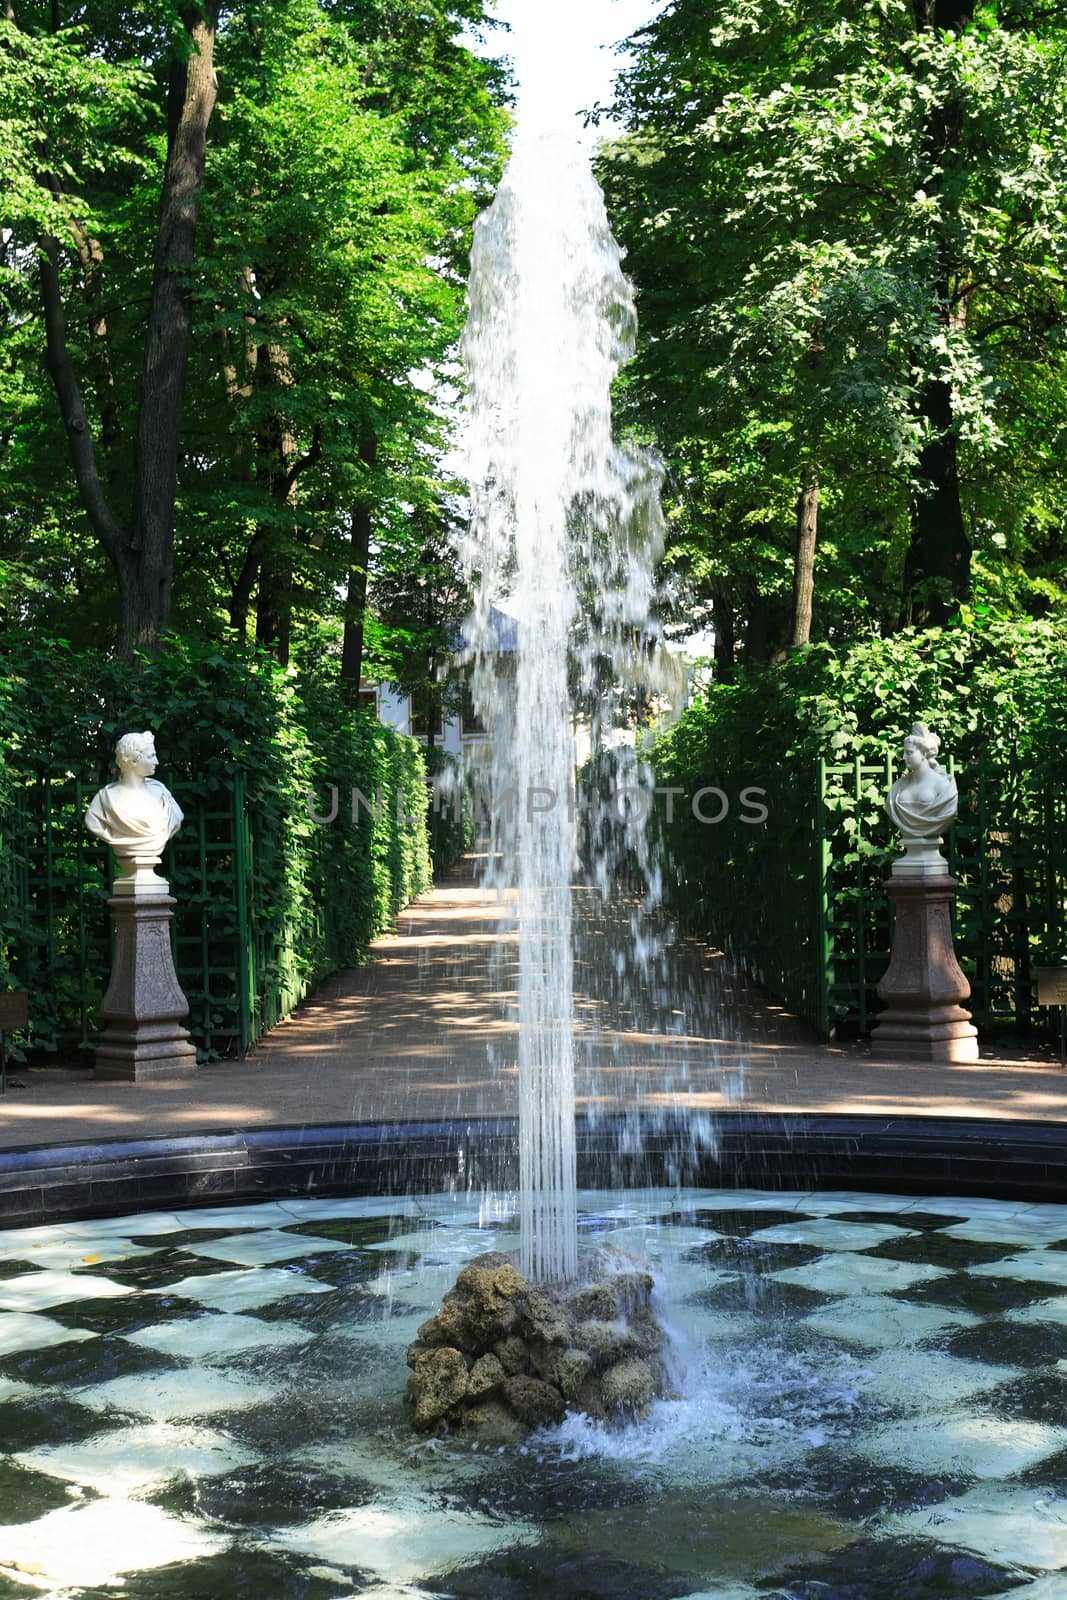 Summer Garden In St. Petersburg, Russia by kvkirillov